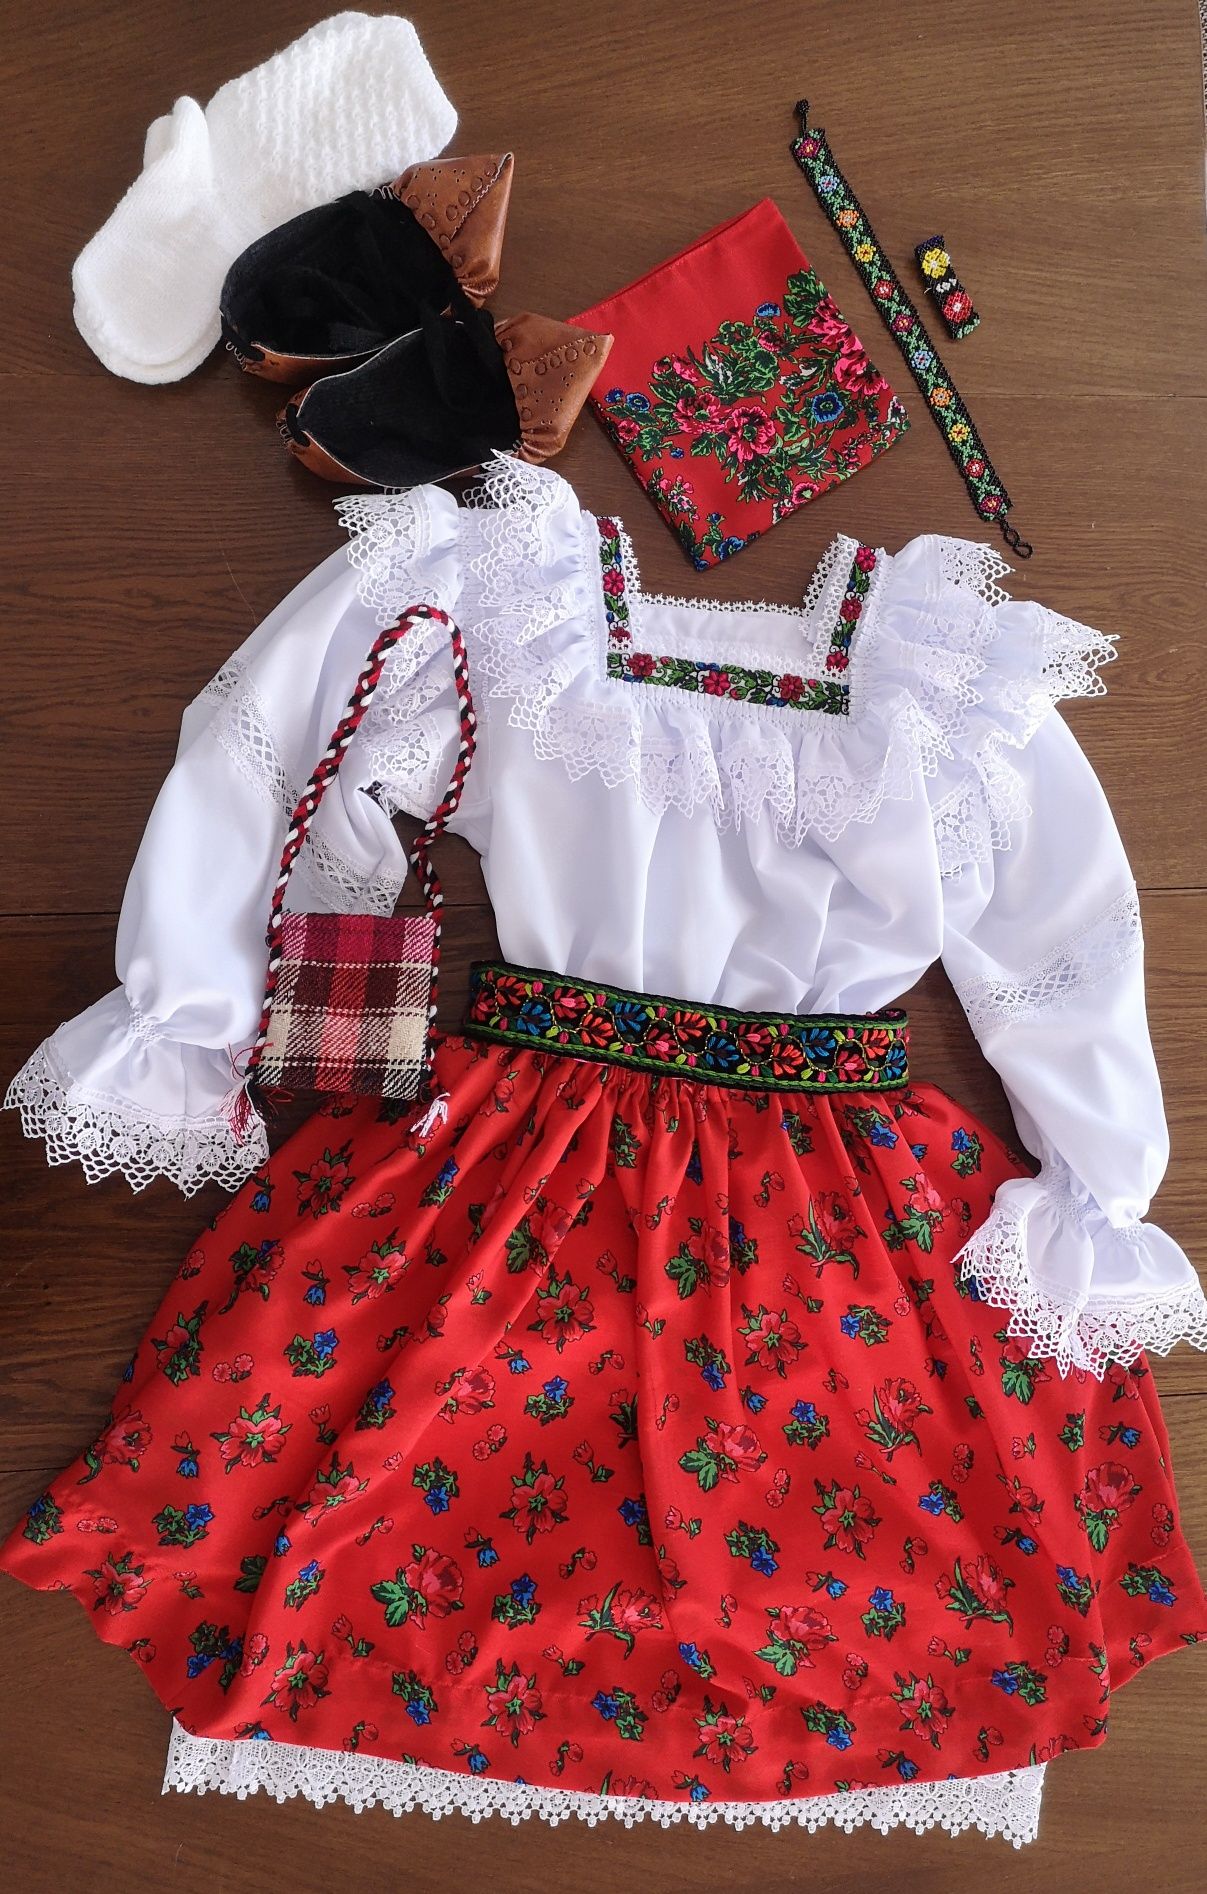 Costum popular femei complet de Maramureș